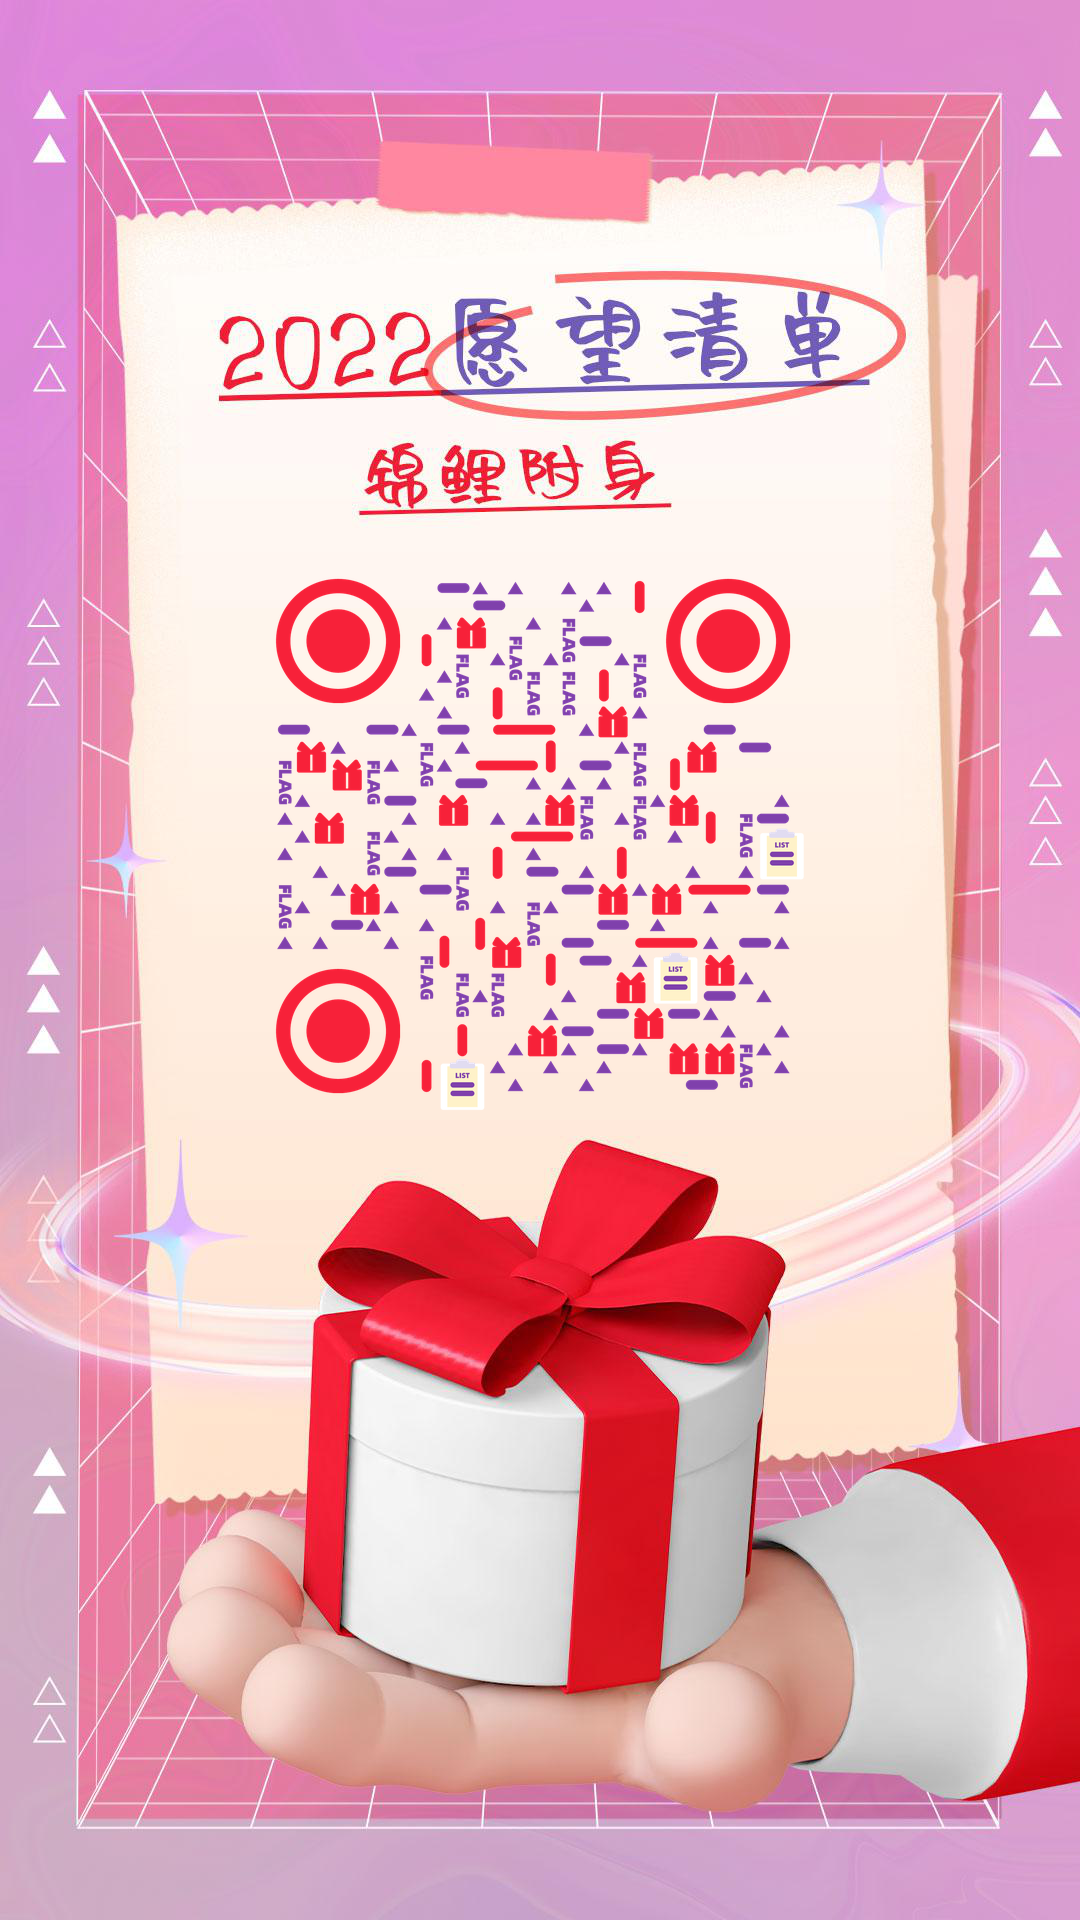 2022新年愿望锦鲤附身flag二维码生成器-平面静态-手机壁纸